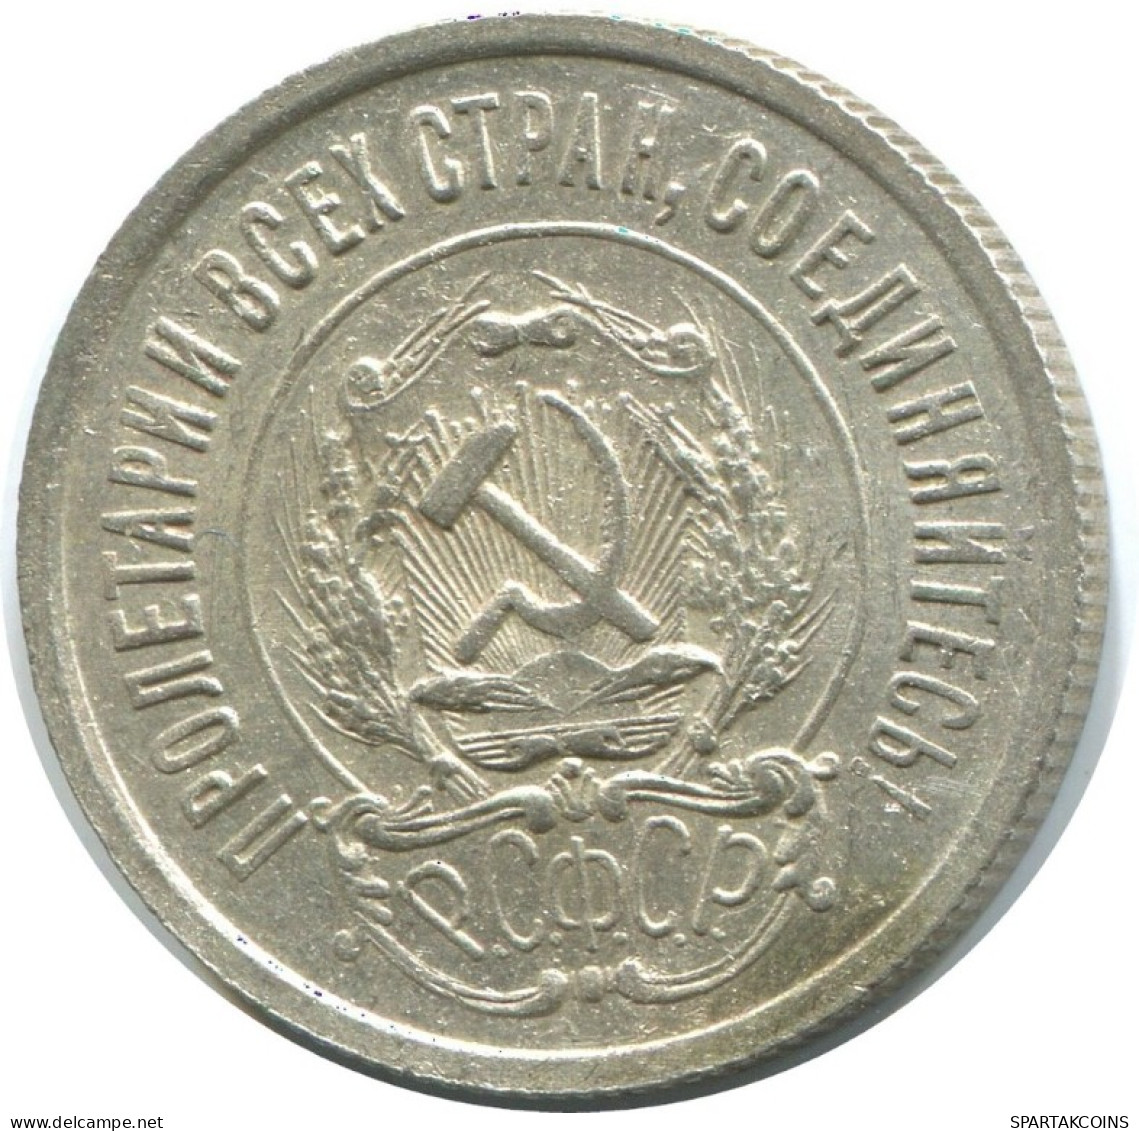 20 KOPEKS 1923 RUSSIA RSFSR SILVER Coin HIGH GRADE #AF600.U.A - Rusland